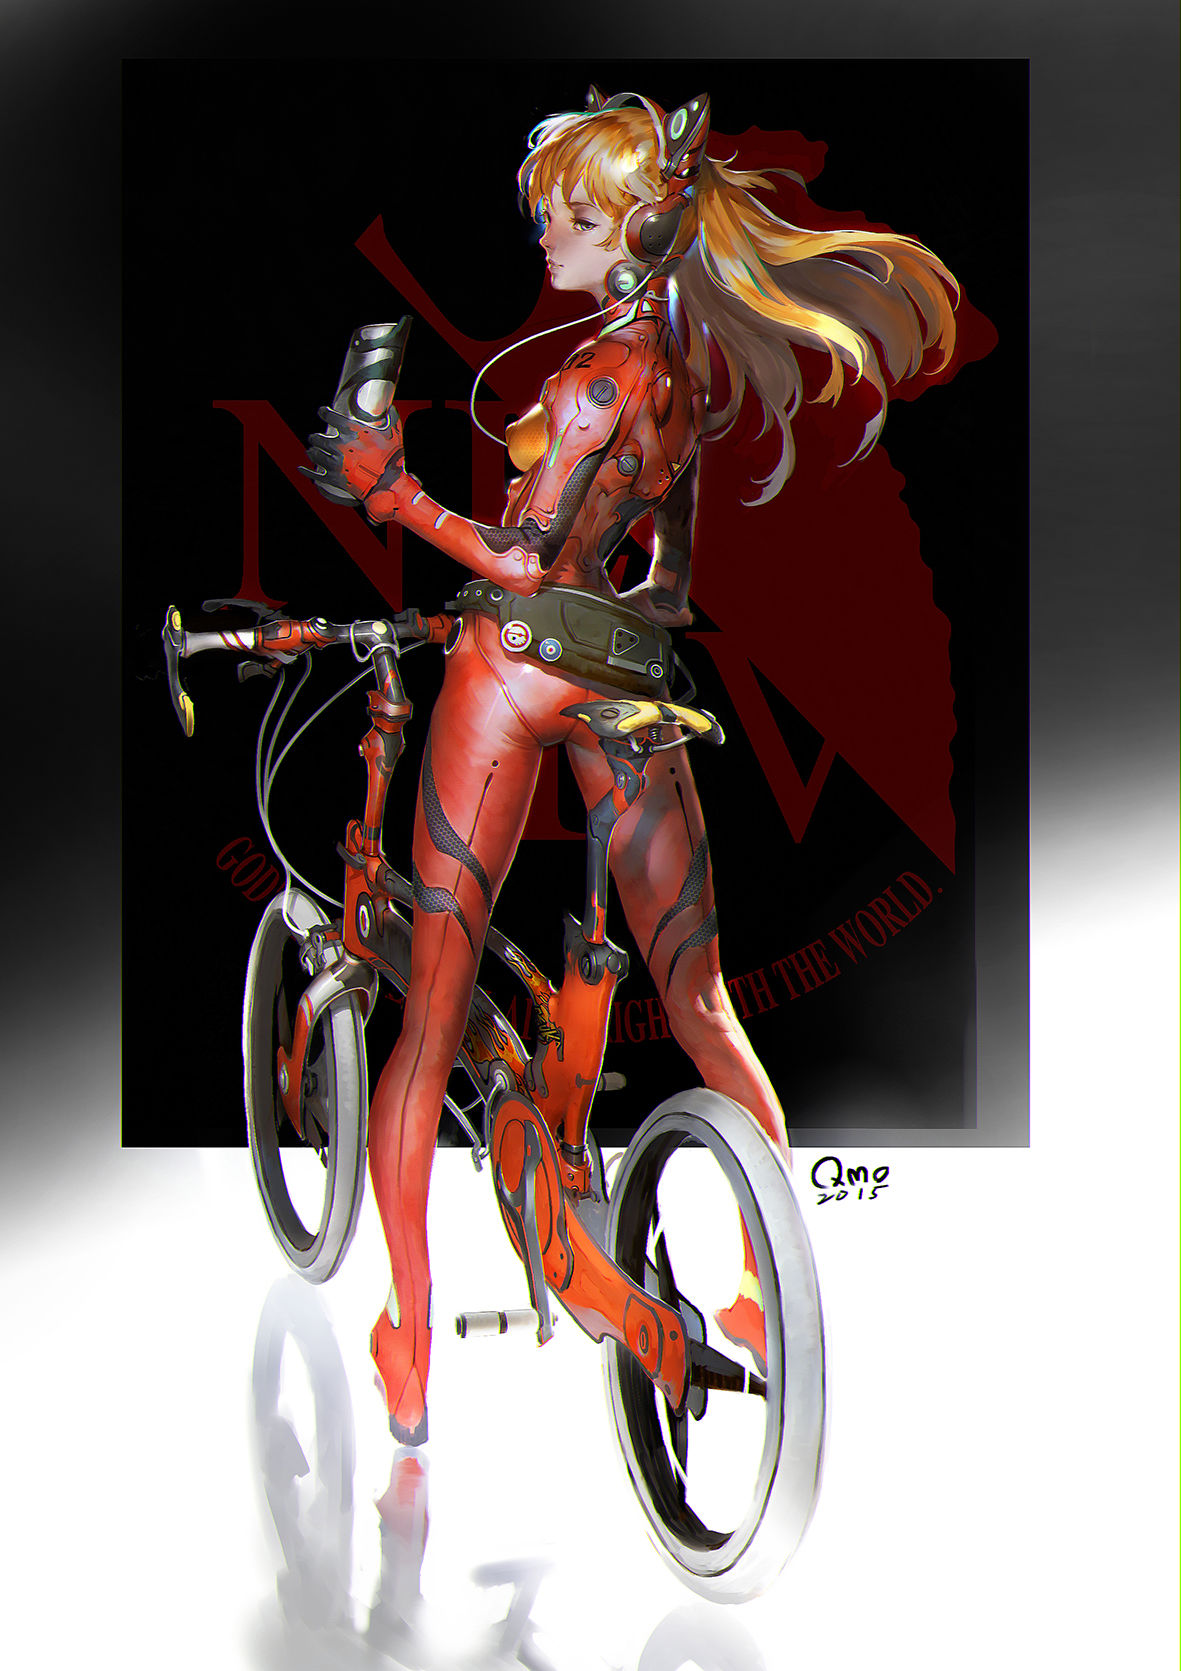 Bicycle's Queen